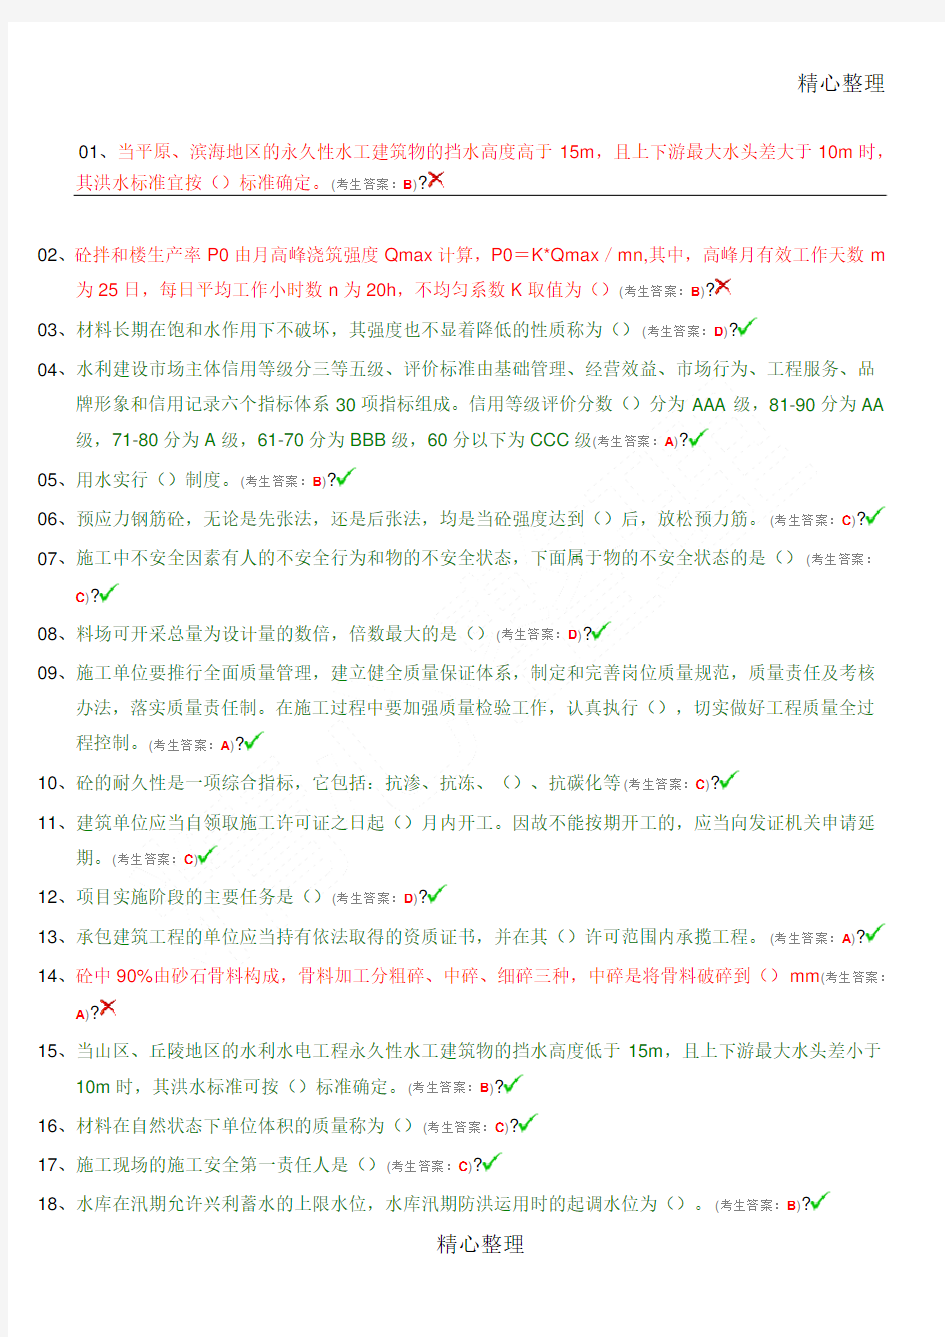 中国水利工程协会员合格考试建筑施工员考试答案